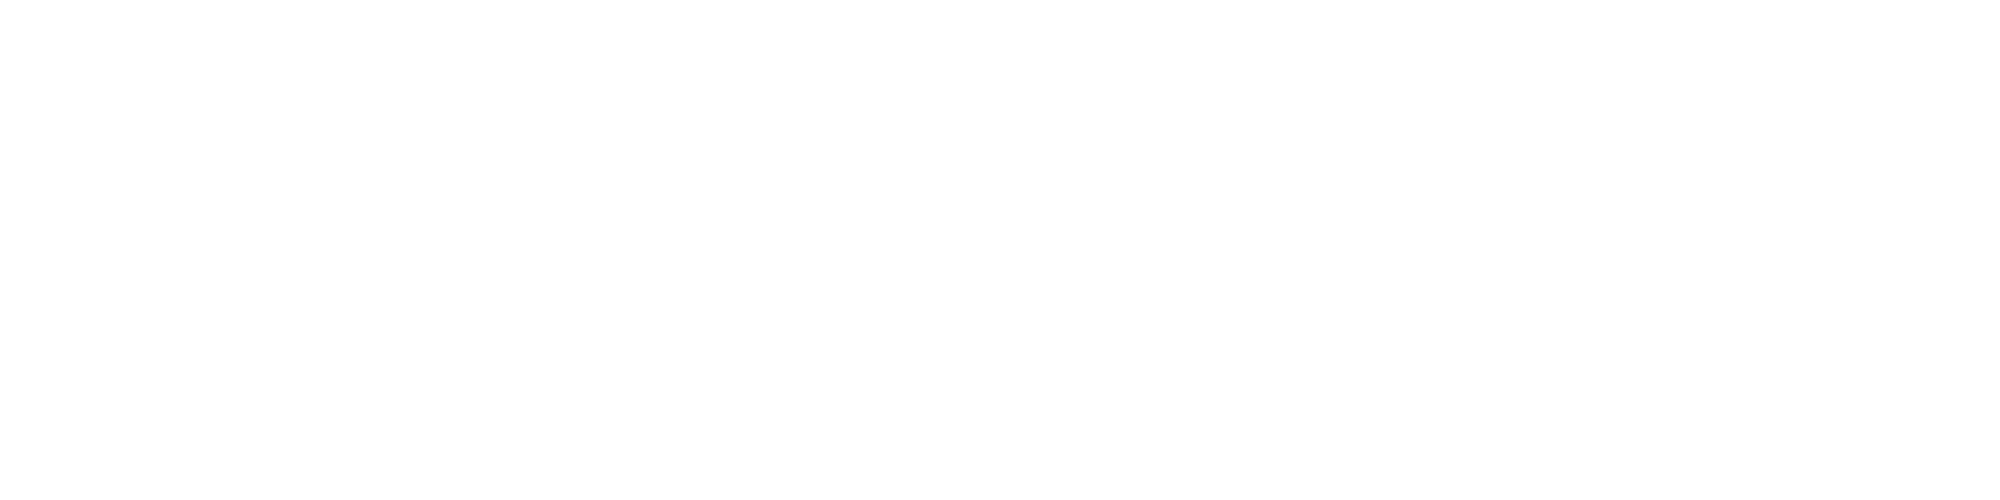 Sandbox Lan